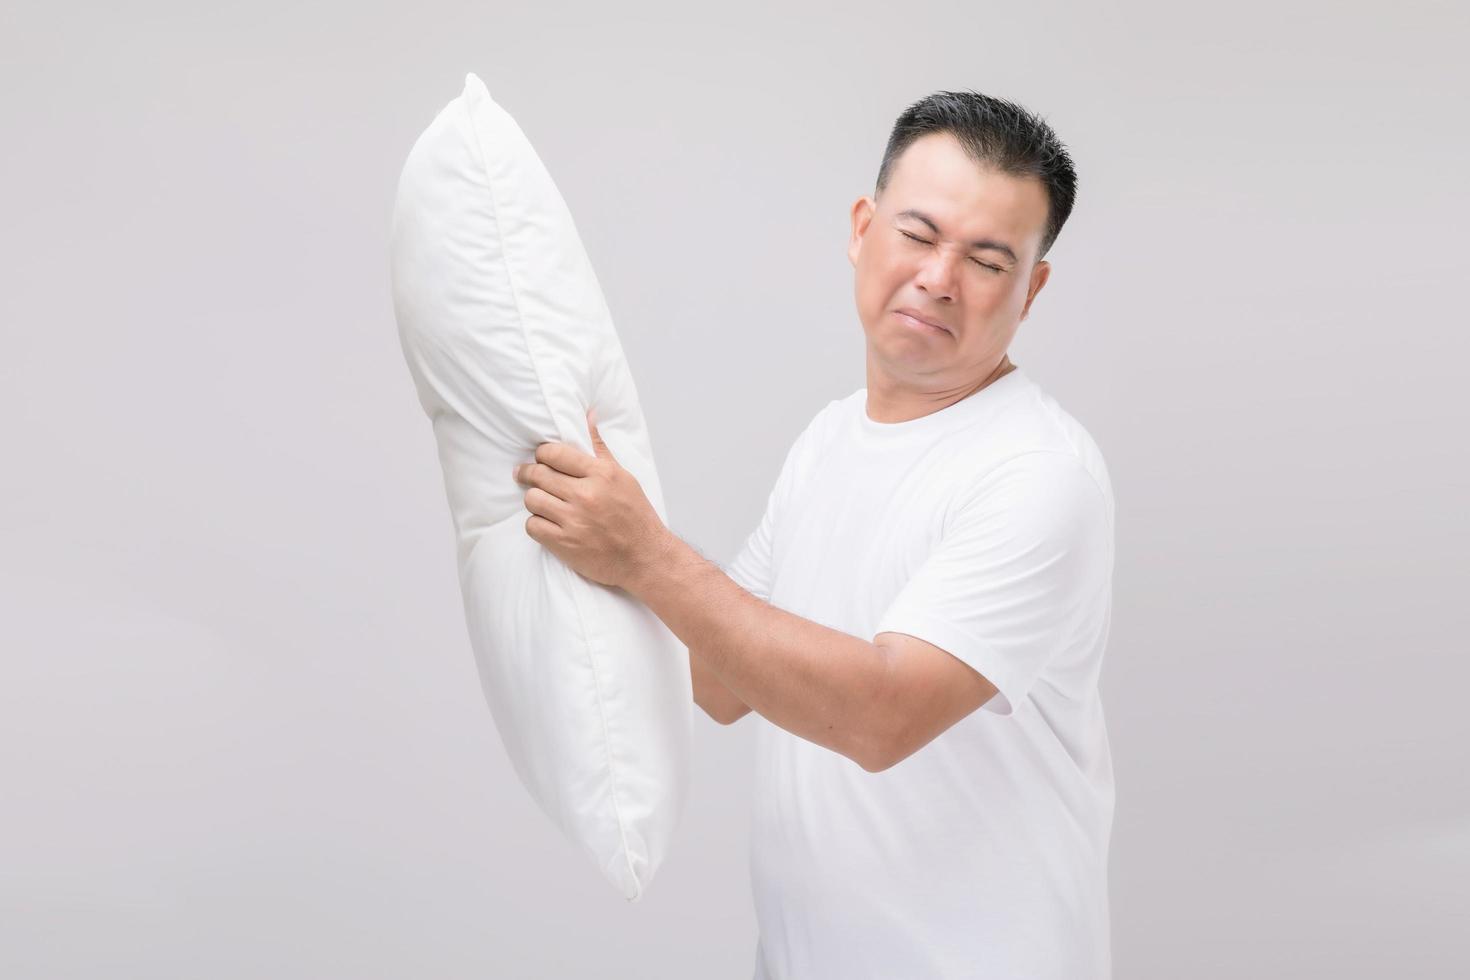 o travesseiro cheira mal. homem asiático de retrato segurando o travesseiro branco e ficando com mau cheiro. estúdio filmado em cinza foto